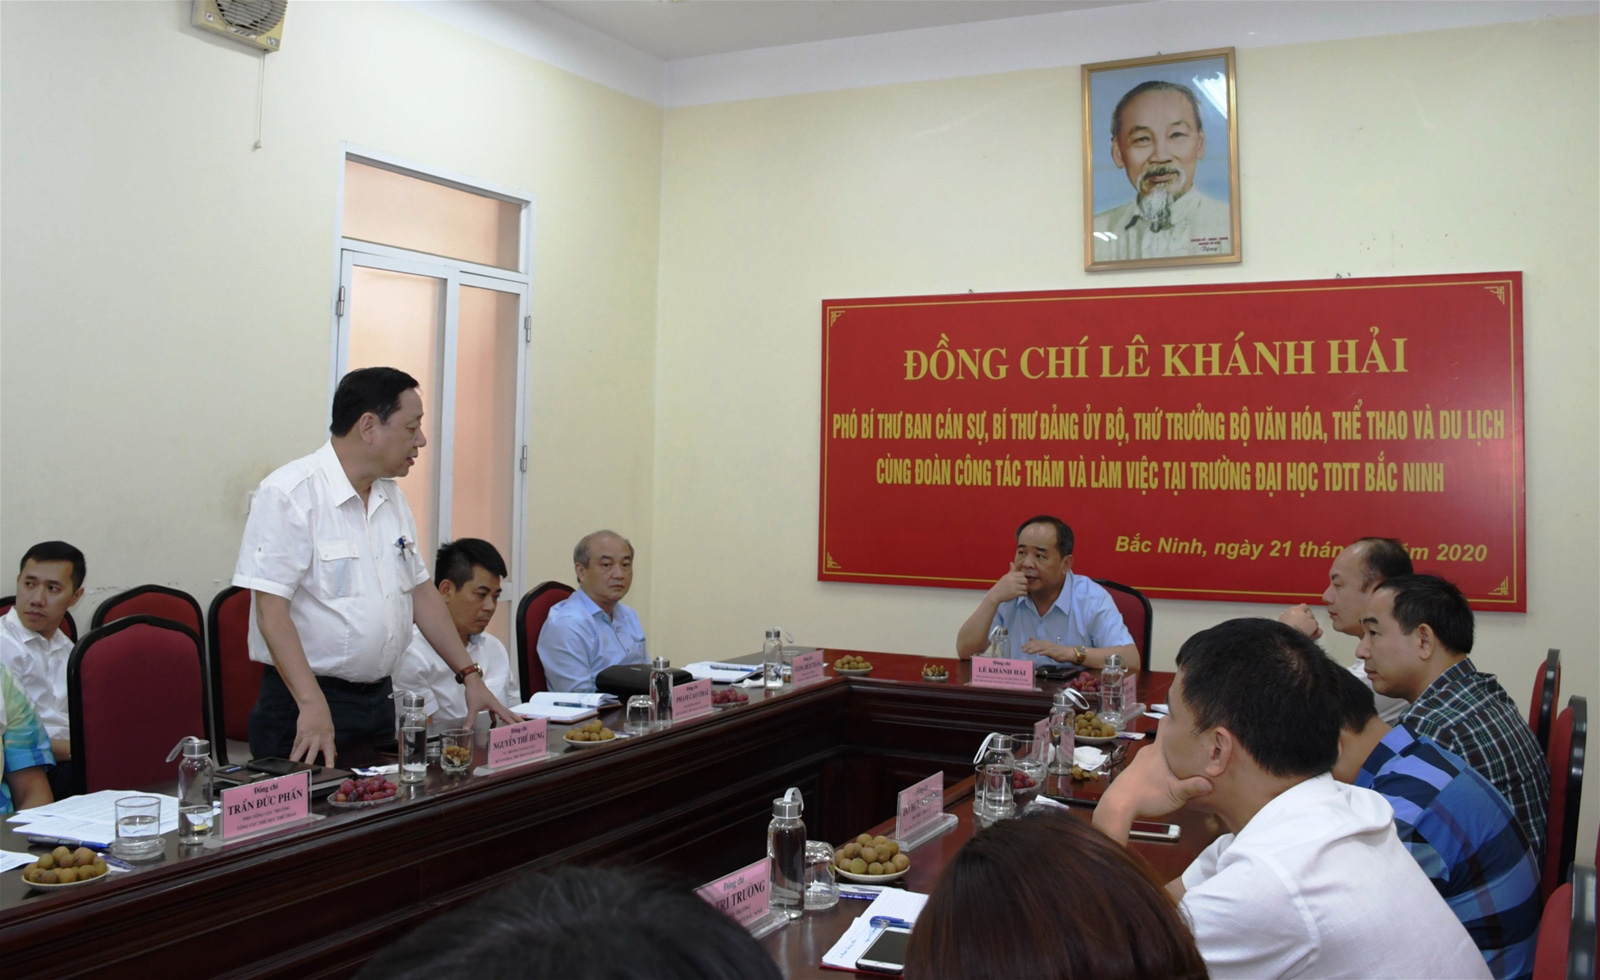 Thứ trưởng Lê Khánh Hải thăm và làm việc tại Trường Đại học TDTT Bắc Ninh - Ảnh 3.